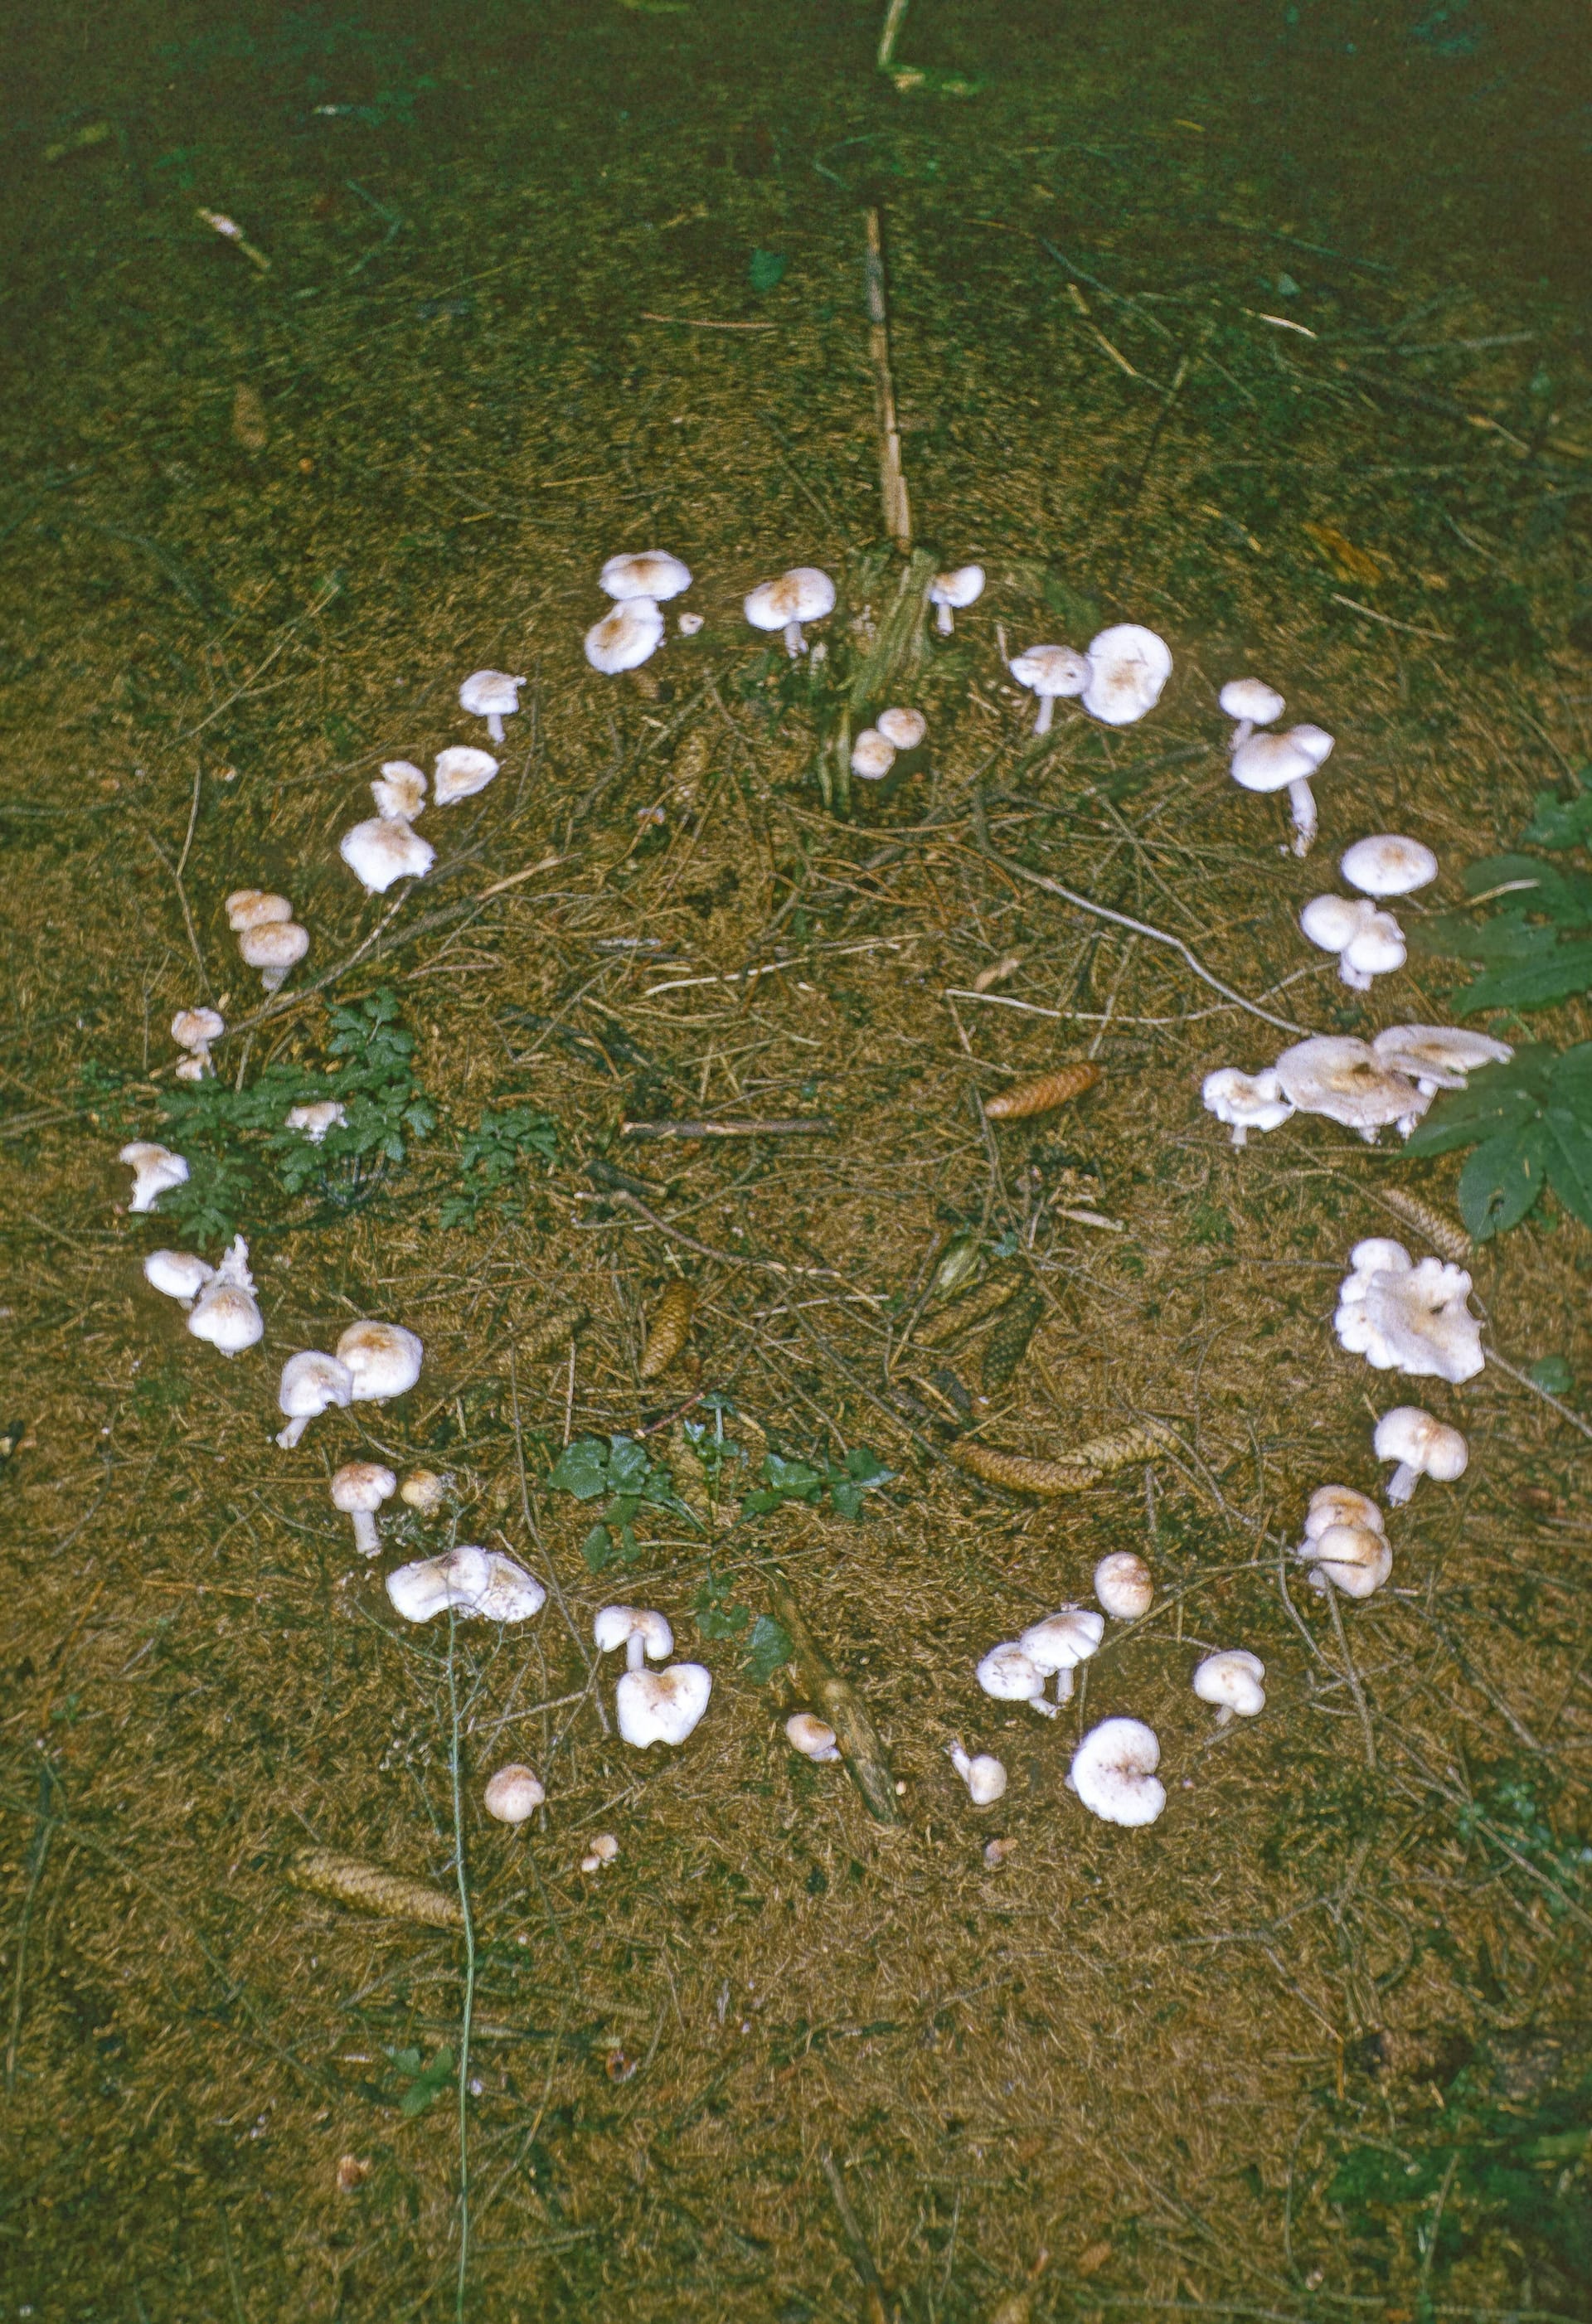 Pilze im Rasen: Beim Hexenring wachsen die Schädlinge in einer bestimmten Form auf dem Boden.